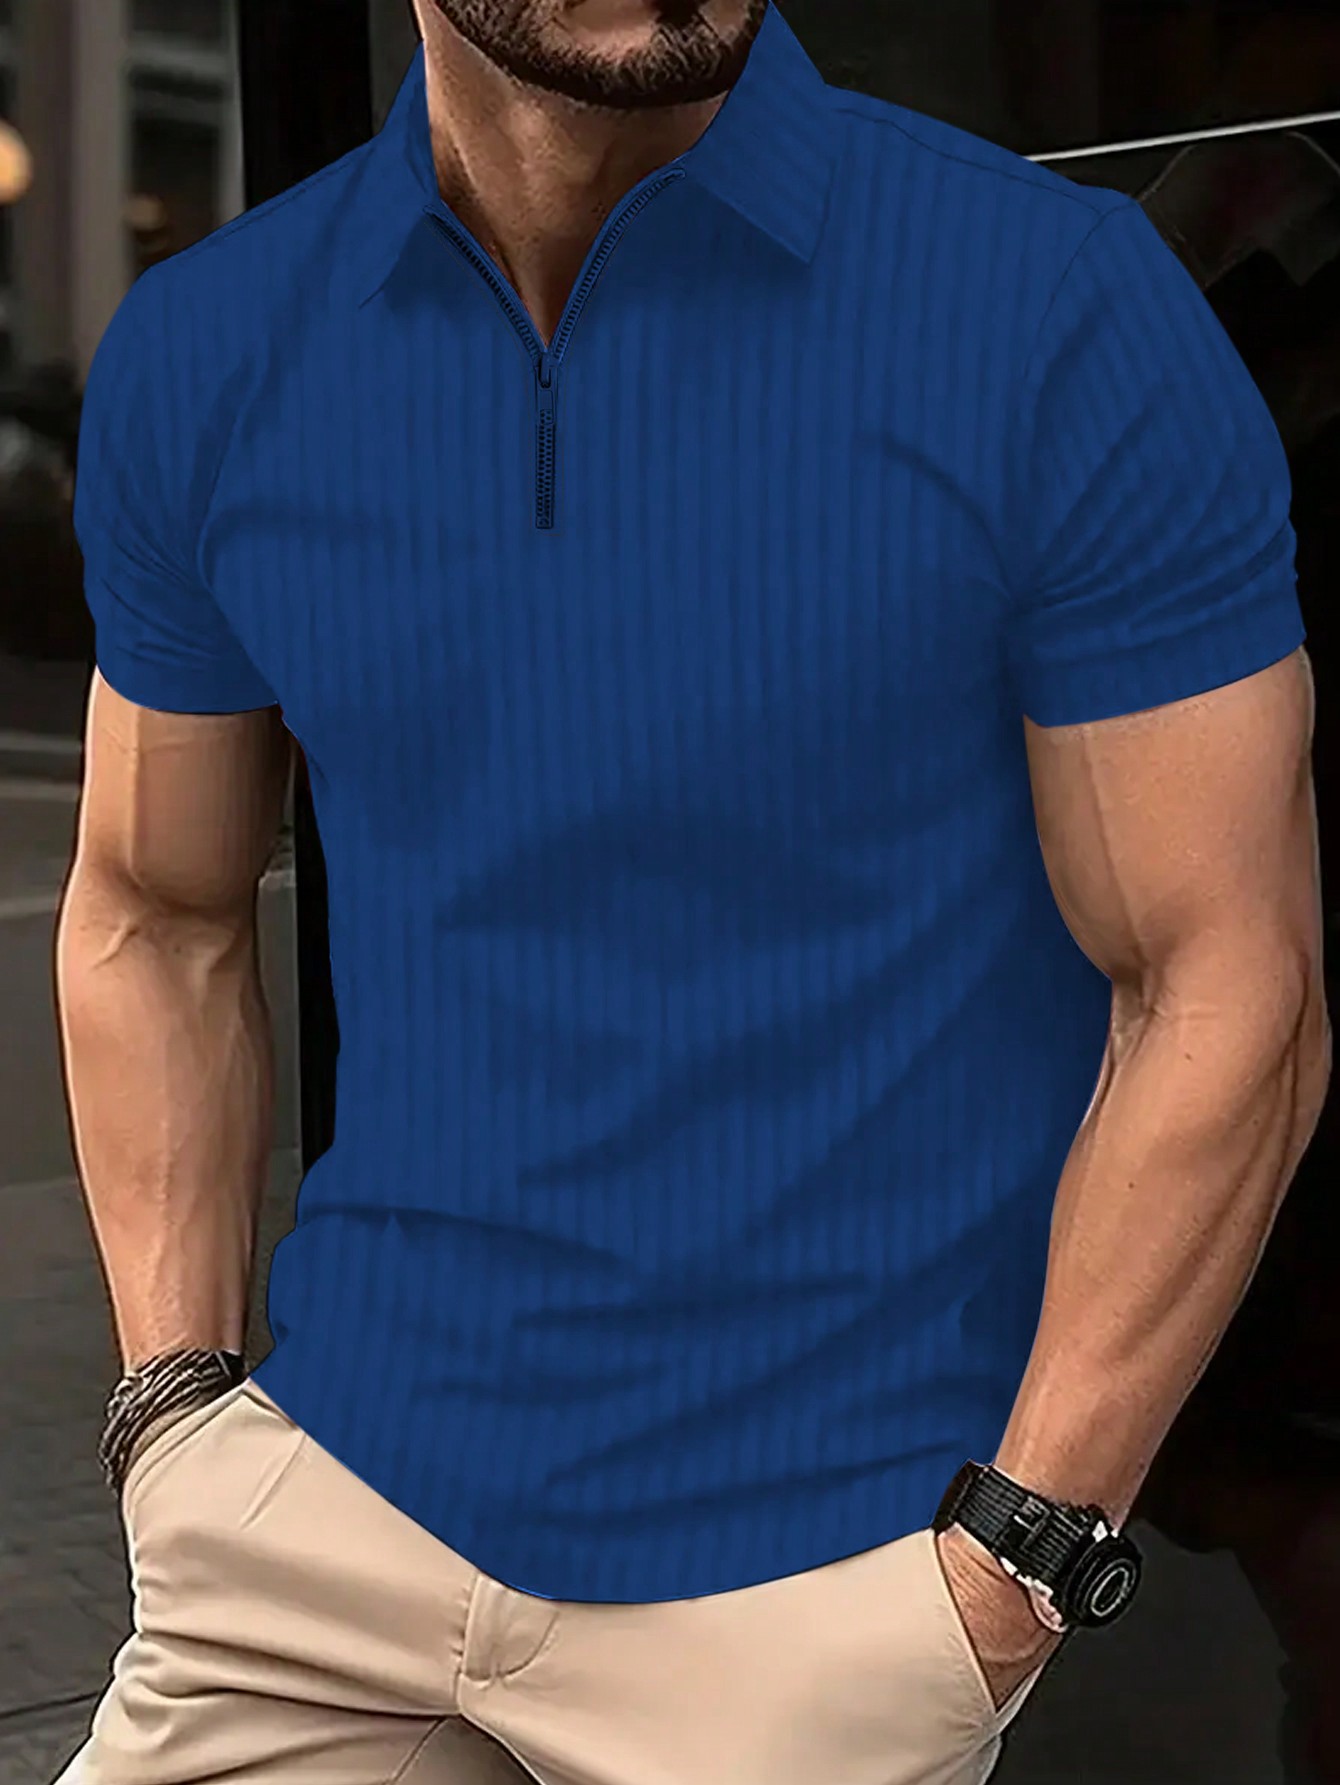 Мужская полосатая рубашка-поло с молнией до половины и короткими рукавами Manfinity Homme больших размеров, синий